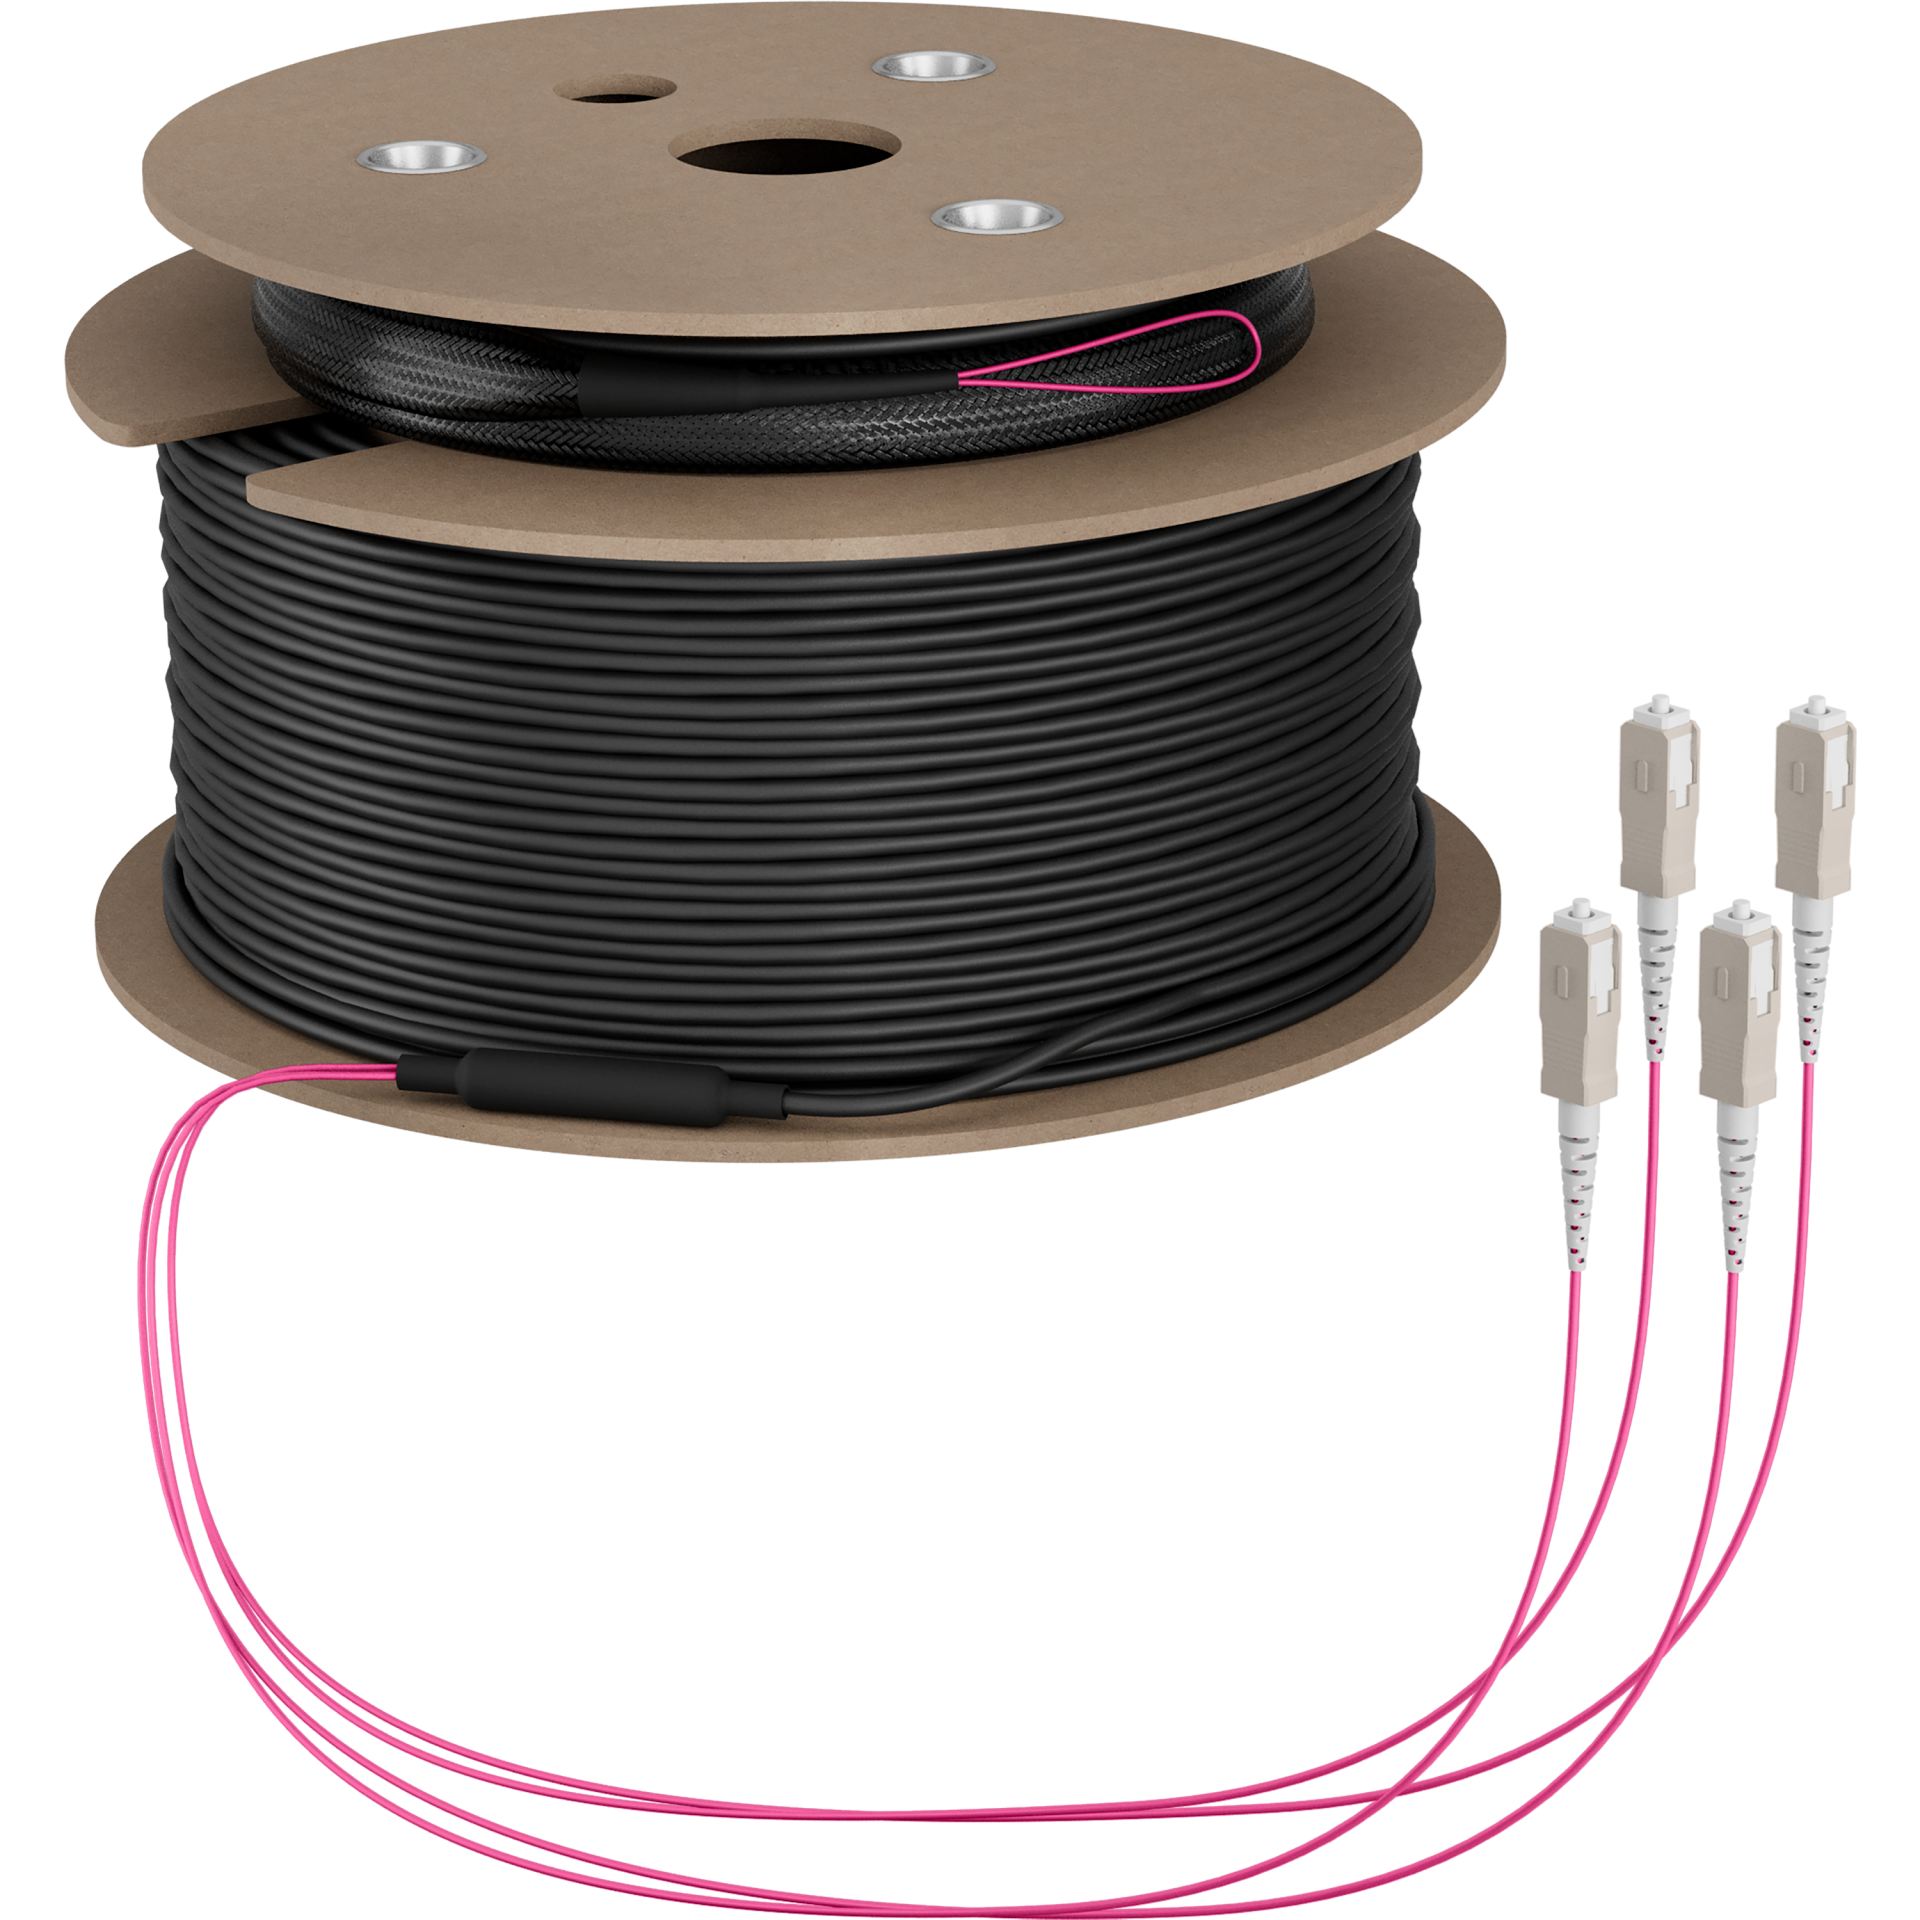 Trunk cable U-DQ(ZN)BH OM4 4G (1x4) SC-SC,170m Dca LSZH